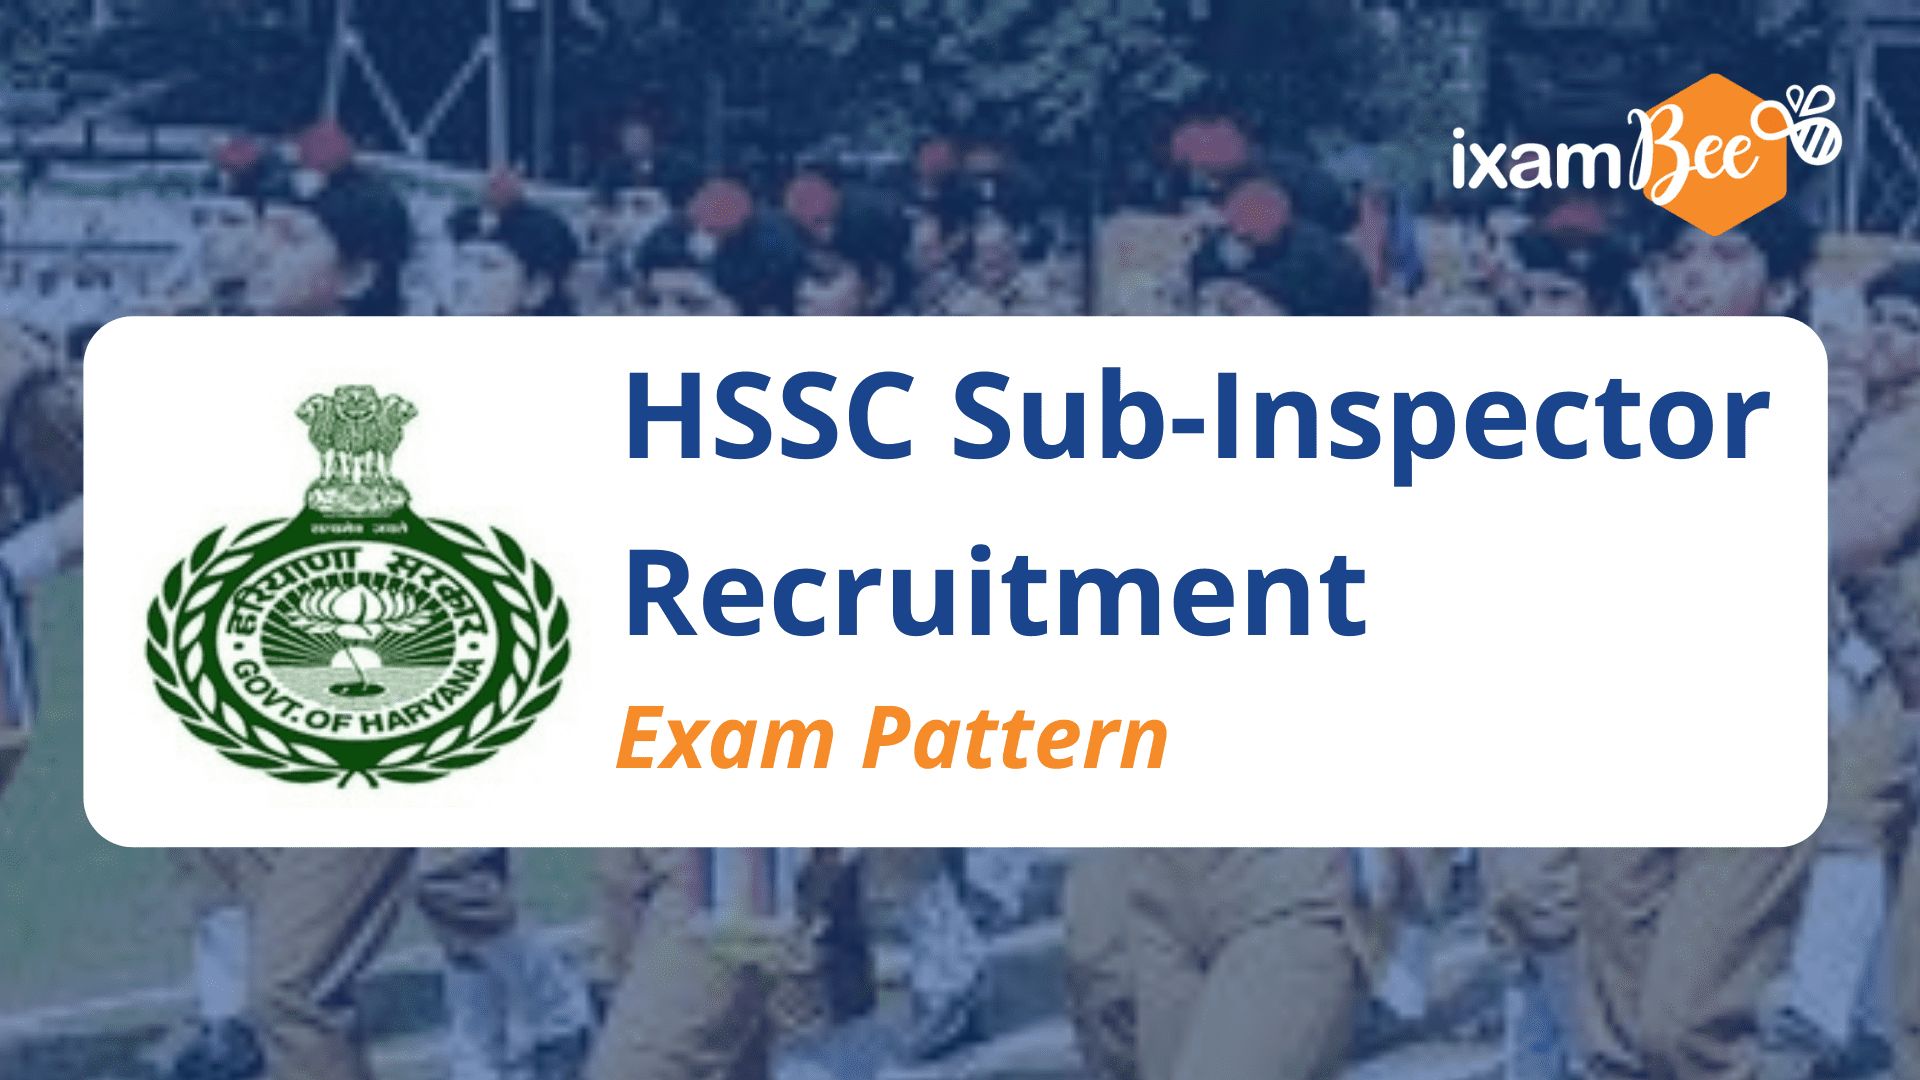 HSSC Sub-Inspector Recruitment Exam Pattern